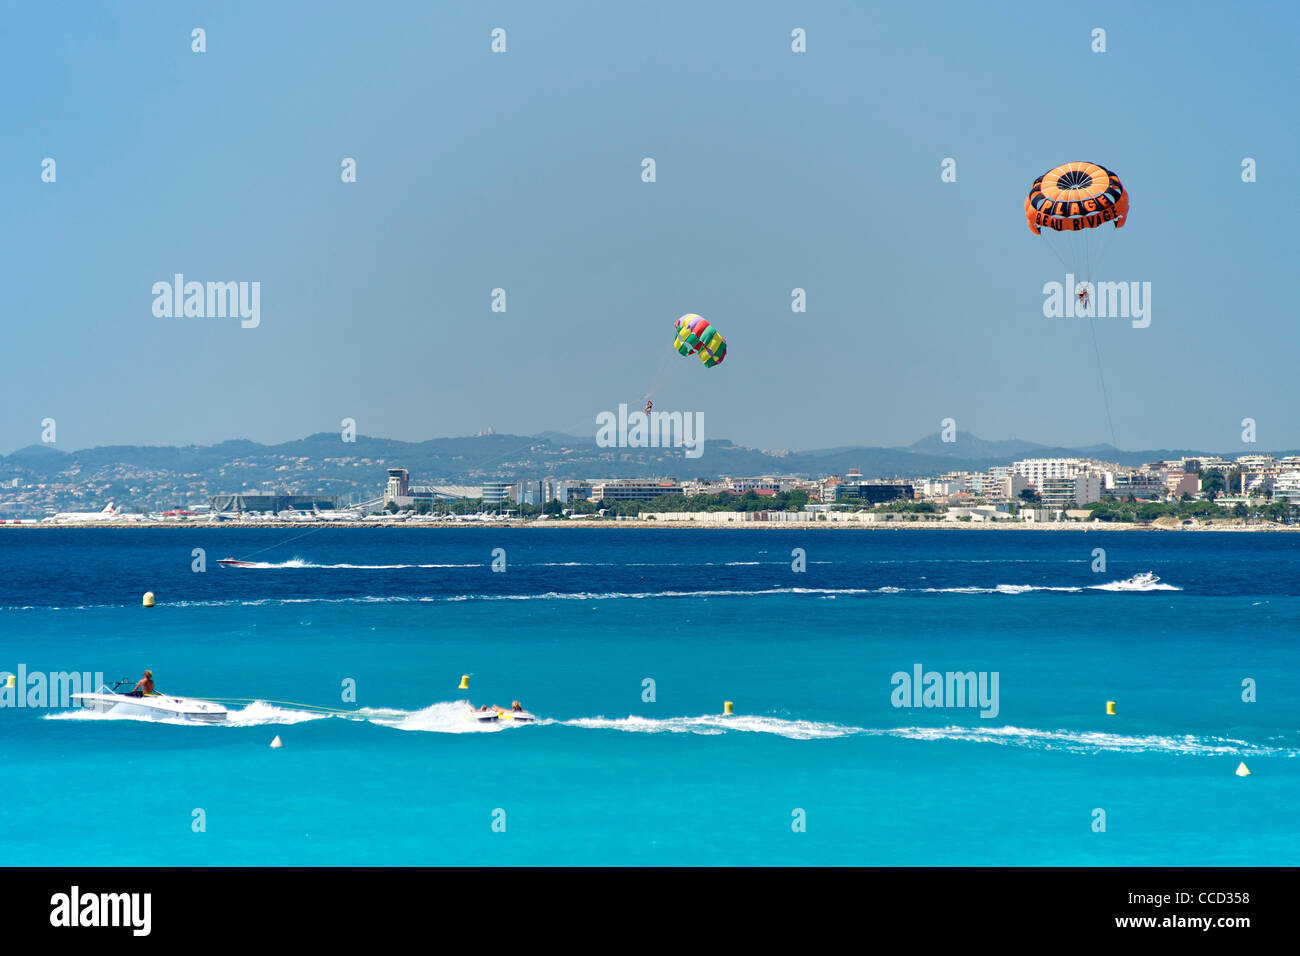 Bateaux à tirant parasailers dans la Baie des Anges à Nice, sur la côte méditerranéenne dans le sud de la France. Banque D'Images